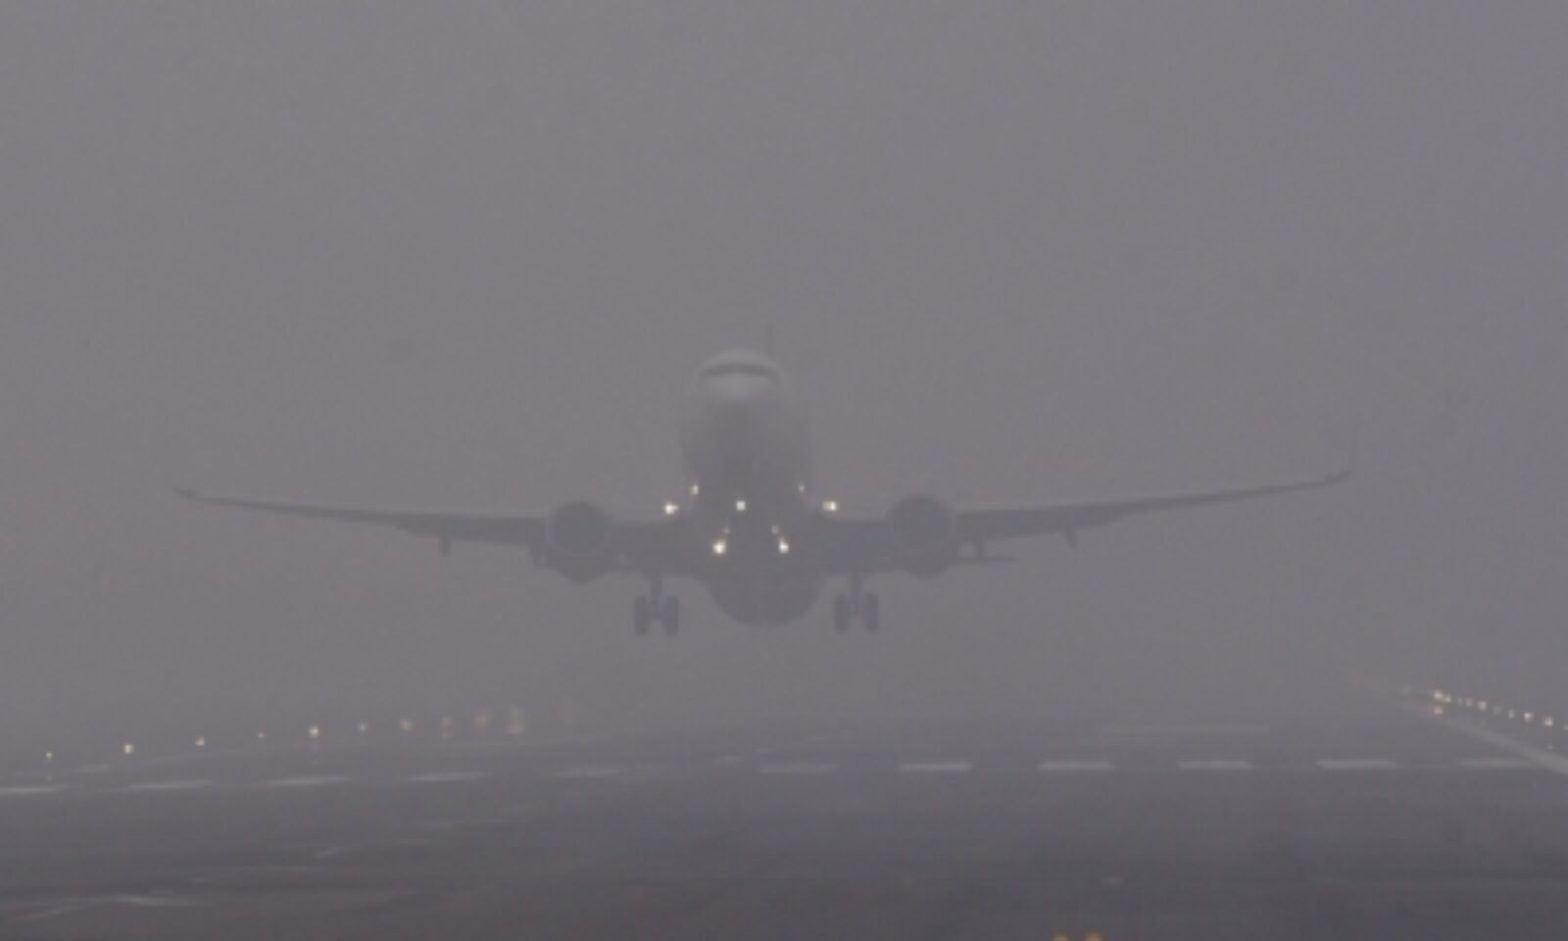 दिल्ली-एनसीआर में छाया हुआ है घना कोहरा, उड़ानों में देरी